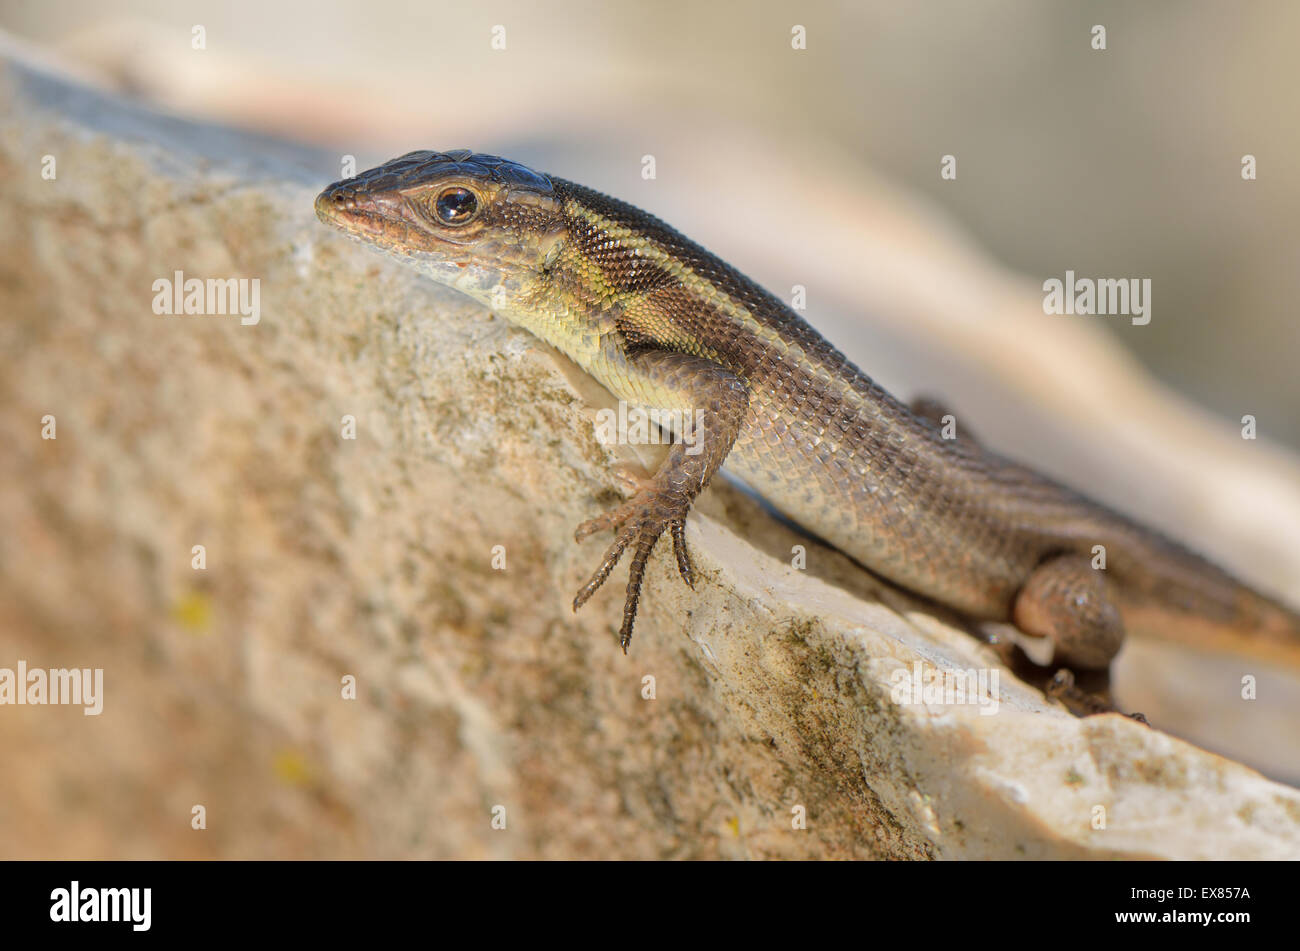 Adult snake-eyed lizard (Ophisops elegans macrodactylus) basking on rock, Lycia, Southwest Turkey Stock Photo